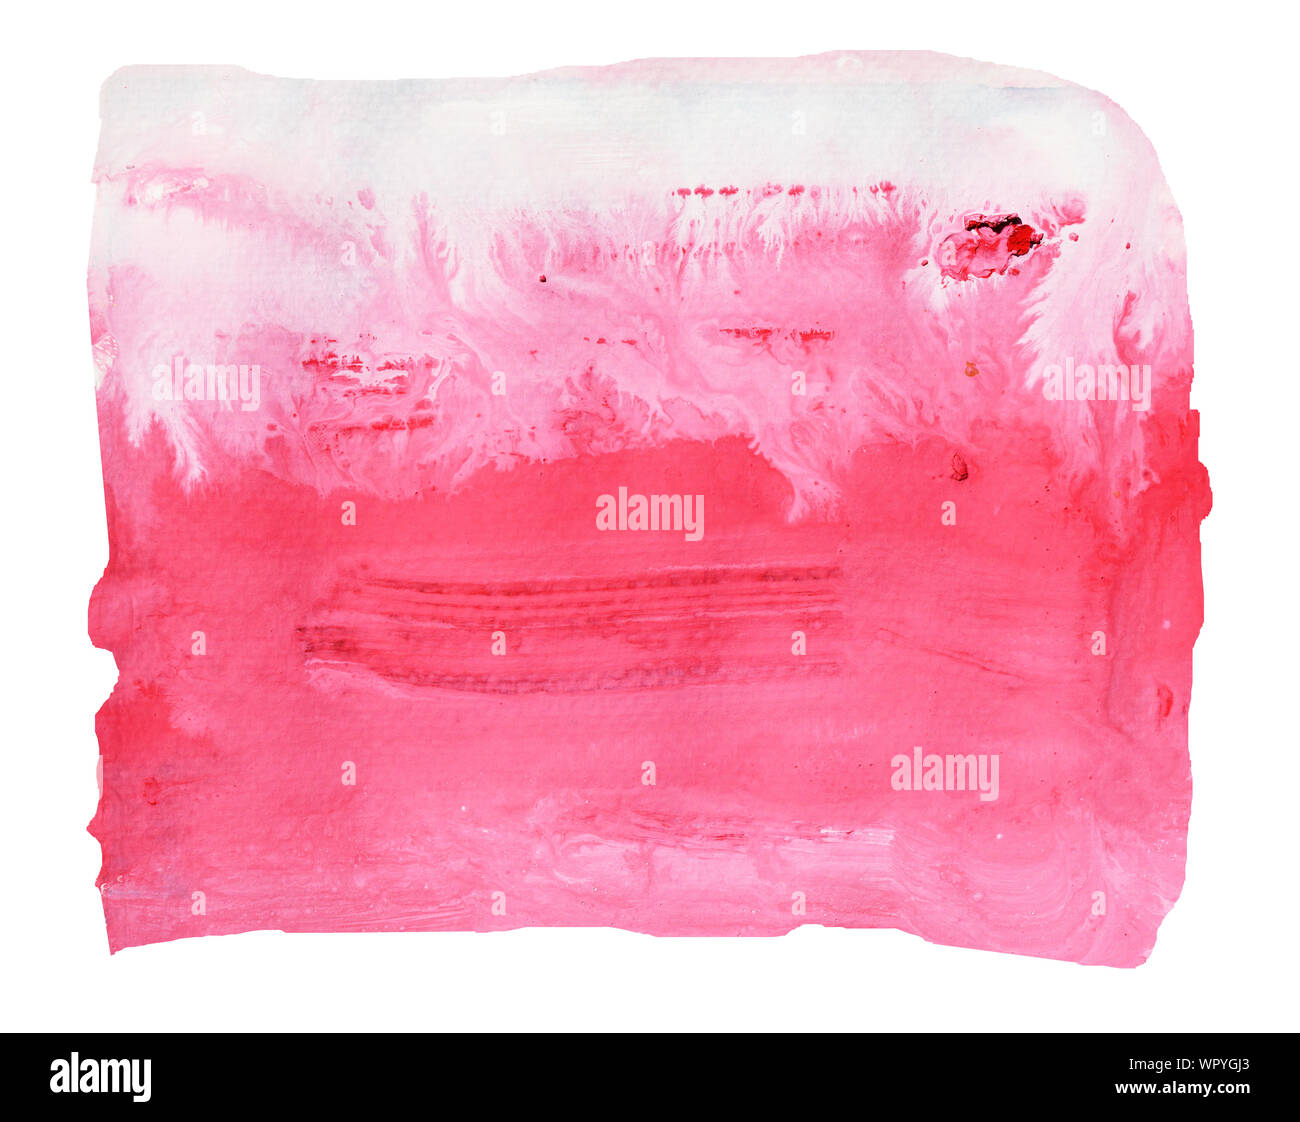 Weiße und rote Flecken auf rosa Farbe Oberfläche, Zusammenfassung Hintergrund und Illustration aus Acryl Malerei auf weißem Hintergrund Stockfoto